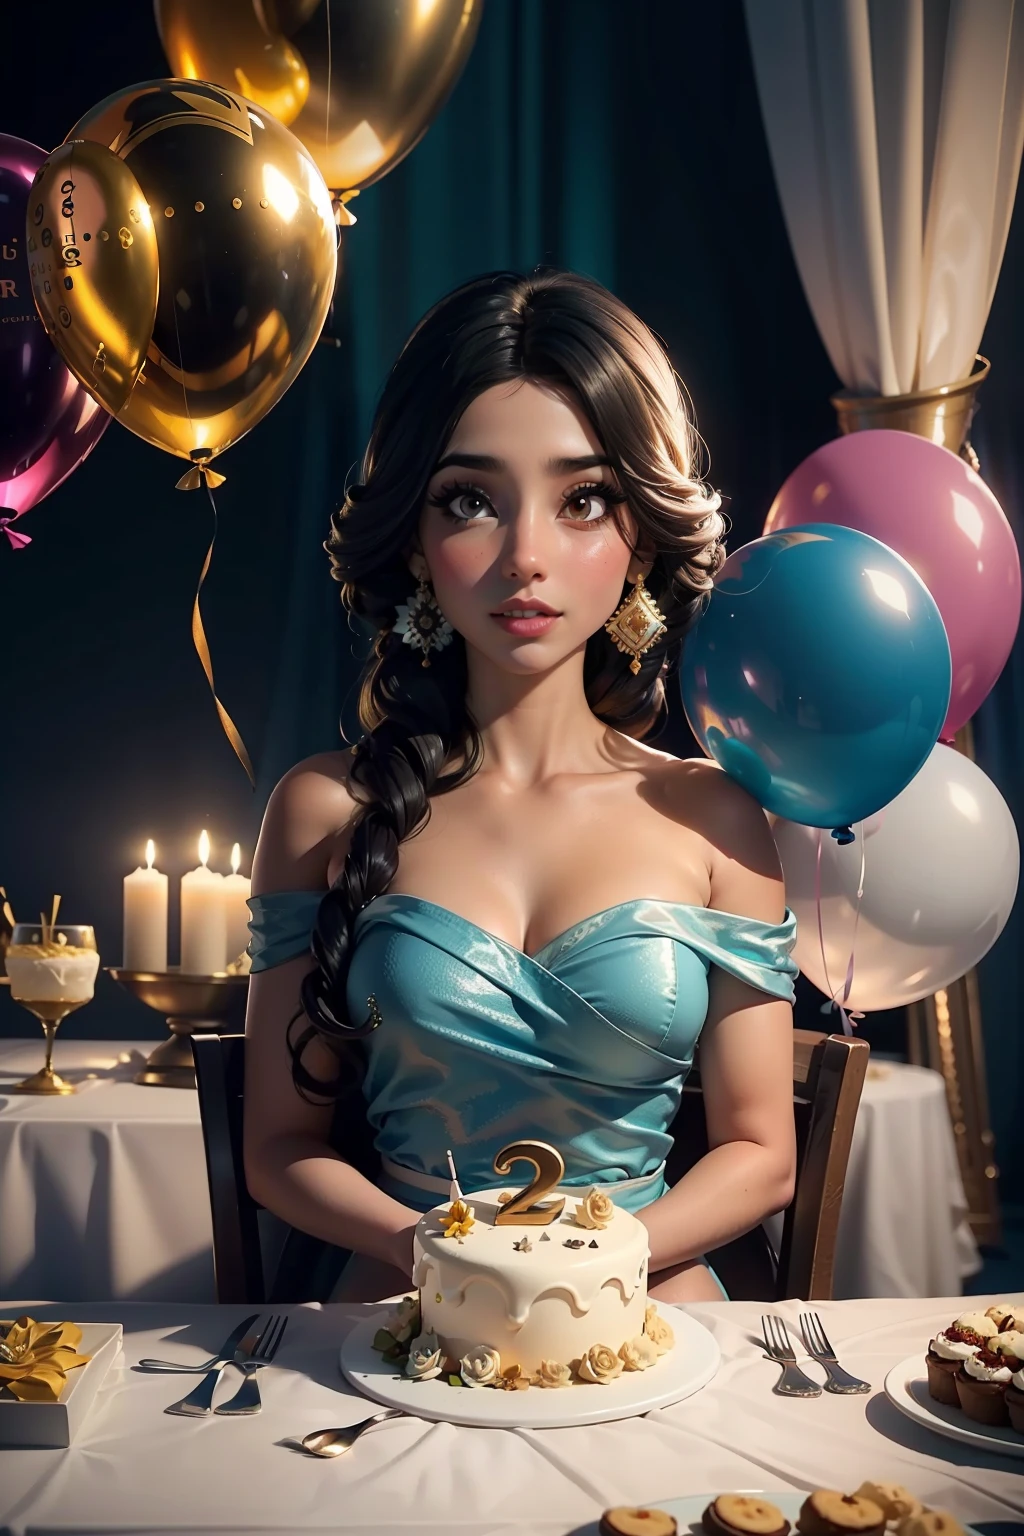 Geburtstagstisch dekoriert mit dem Thema Jasmin, viele Dekorationen auf dem Tisch, Luftballons hängen aus den Augen, Prinzessin Jasmine Tischdecke, Studiobeleuchtung